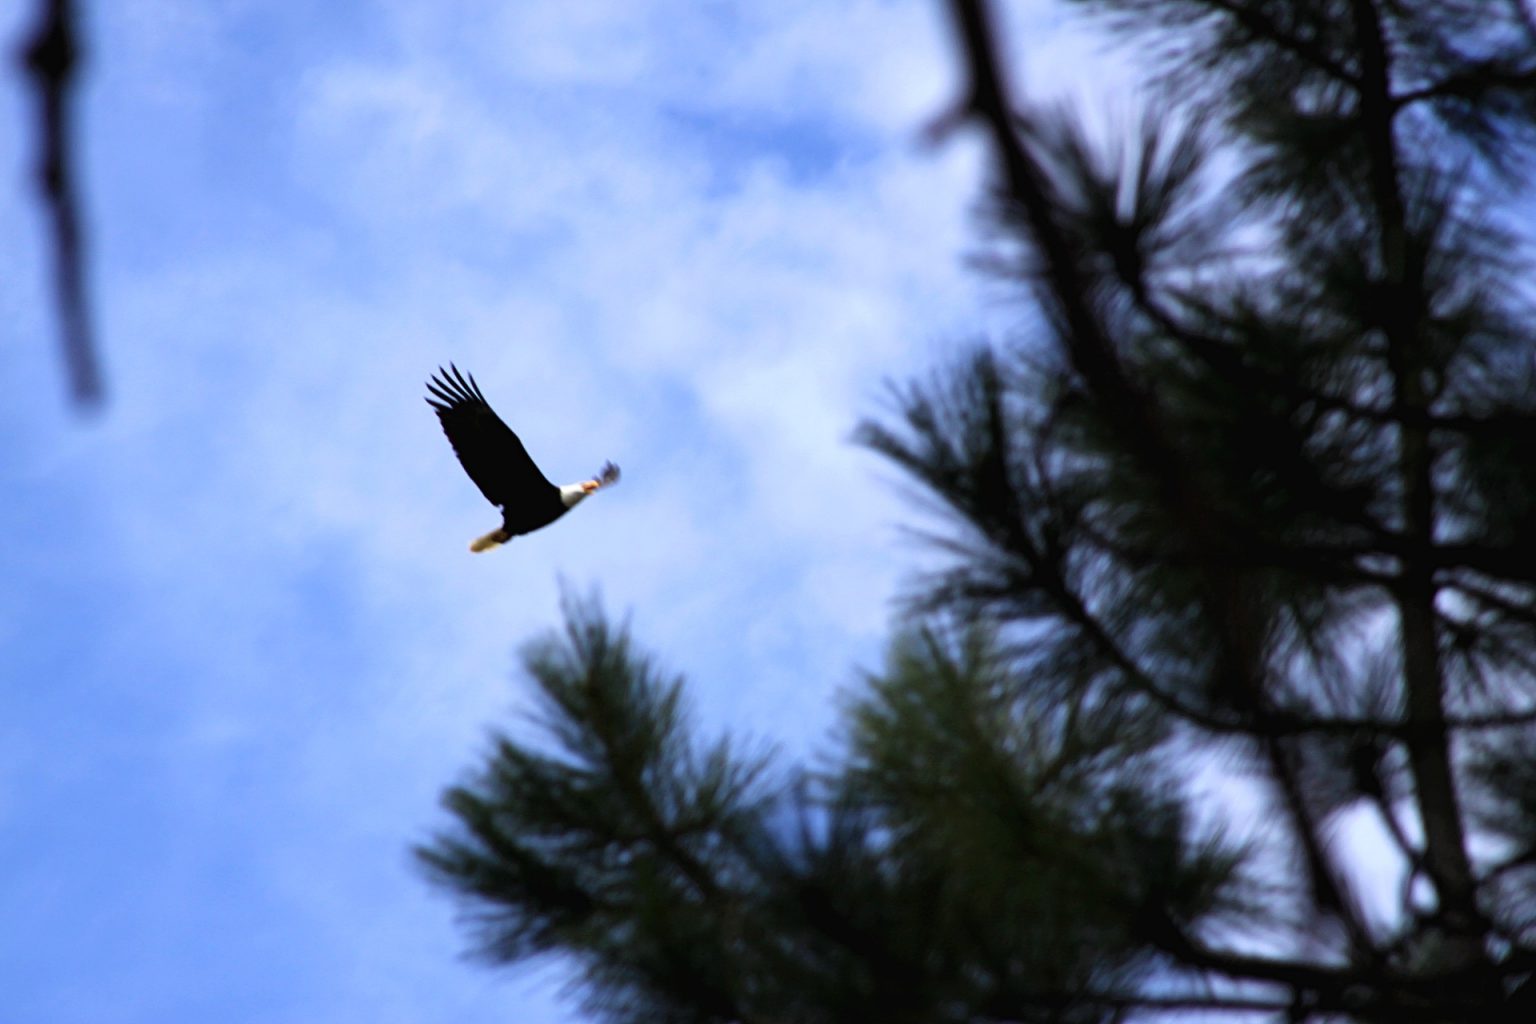 a bald eagle soaring through the sky